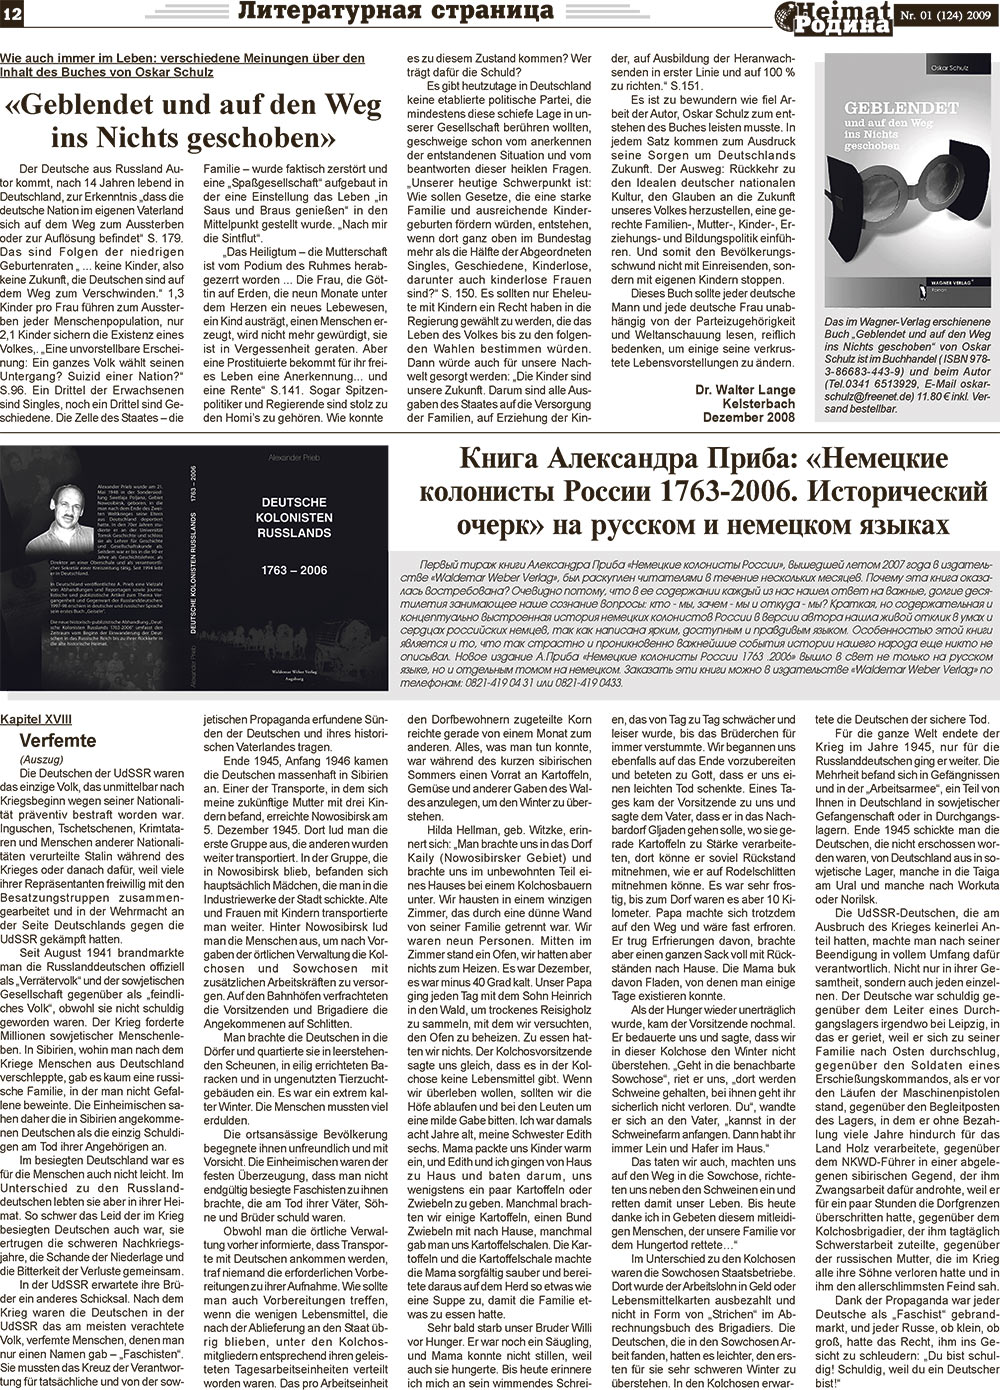 Heimat-Родина (Zeitung). 2009 Jahr, Ausgabe 1, Seite 12